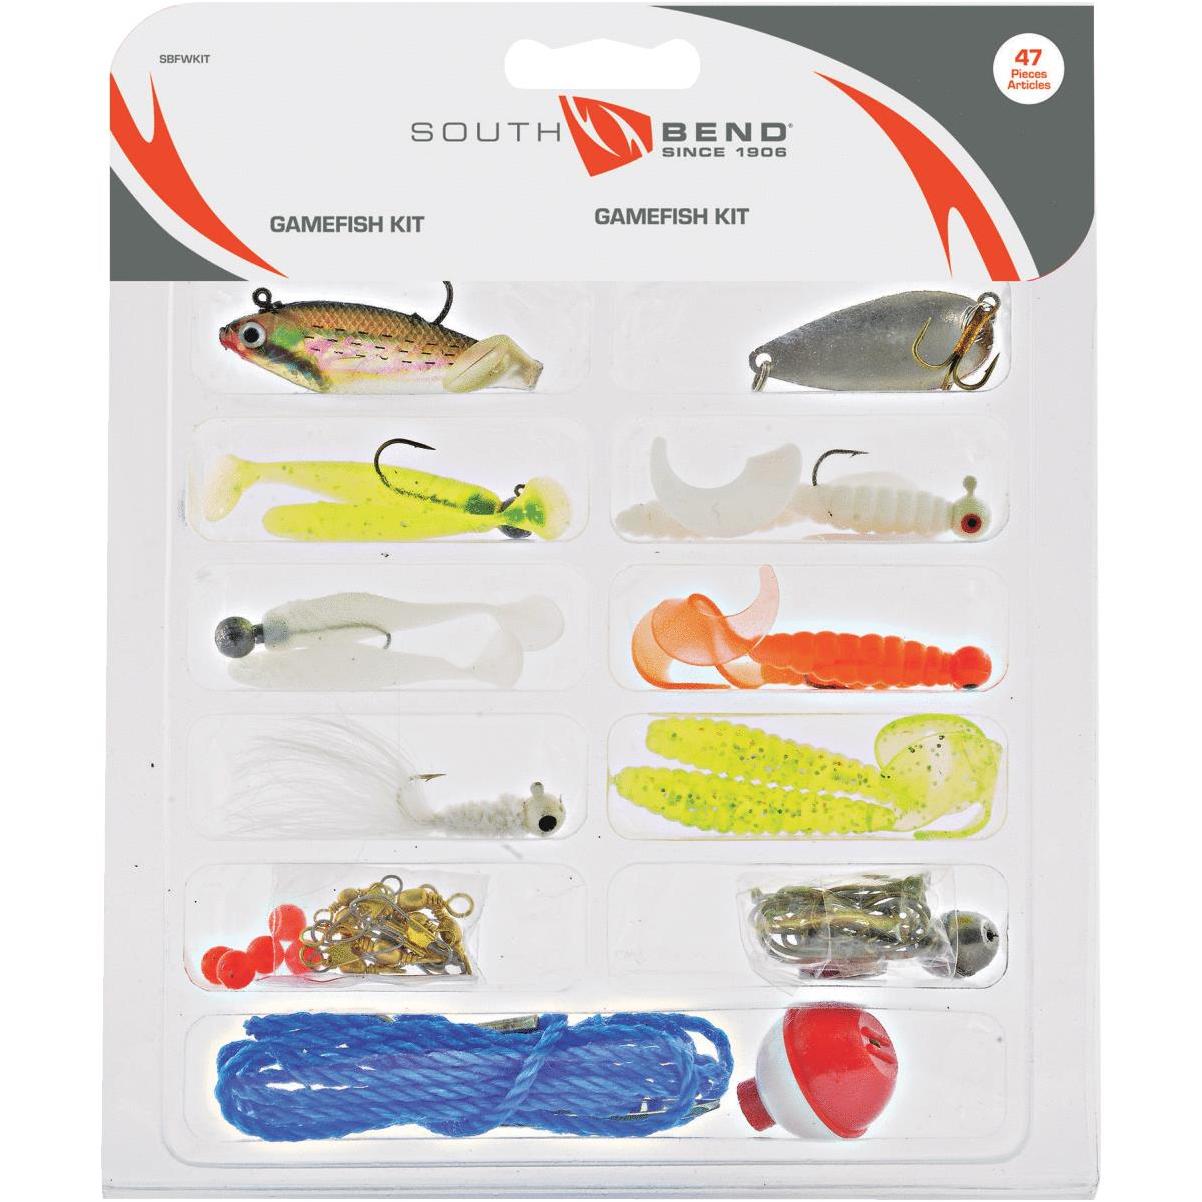 South Bend Gamefish Kit